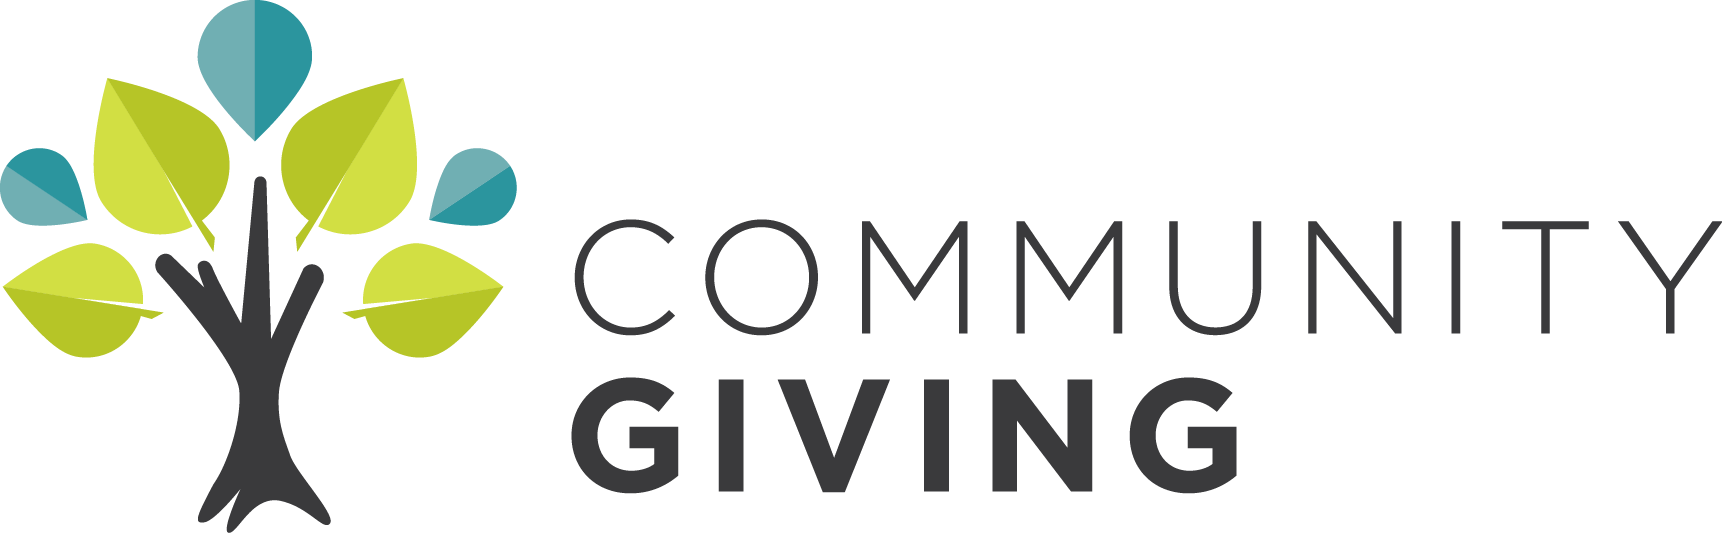 Logotipo de donaciones comunitarias